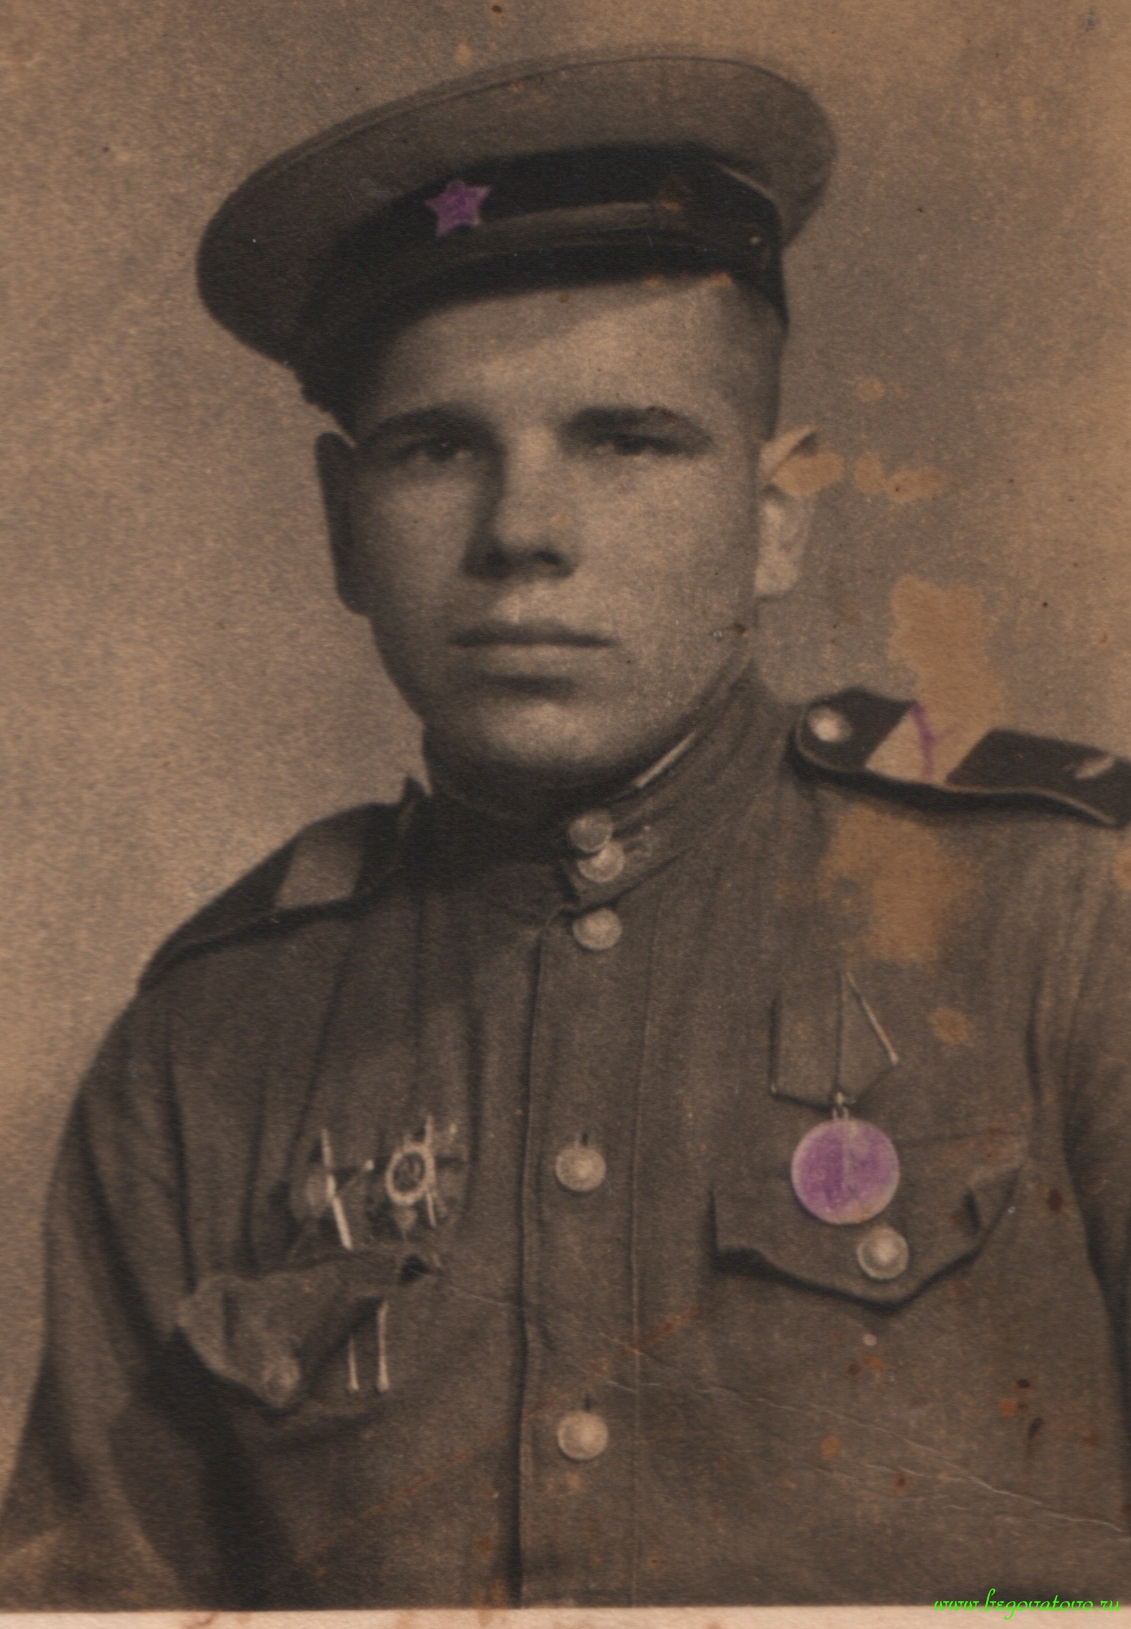 Где найти фото ветерана великой отечественной войны по фамилии